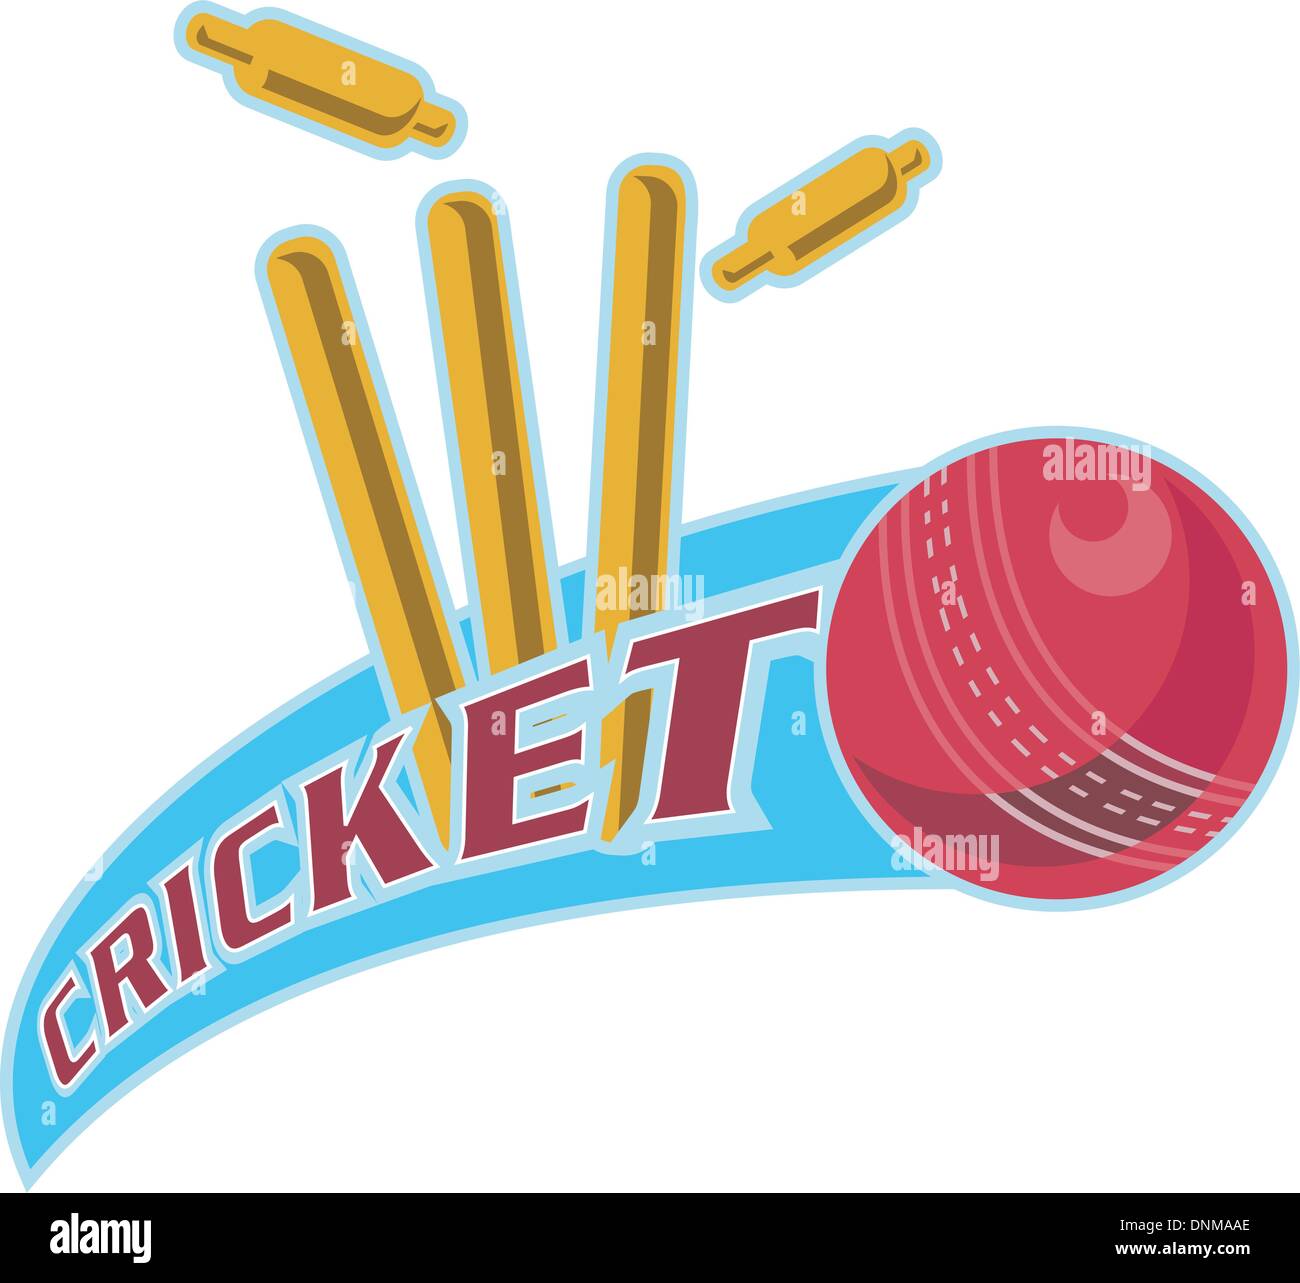 Beispiel für ein Cricketball trifft bowling über Wicket mit Worten "Cricket" Stock Vektor